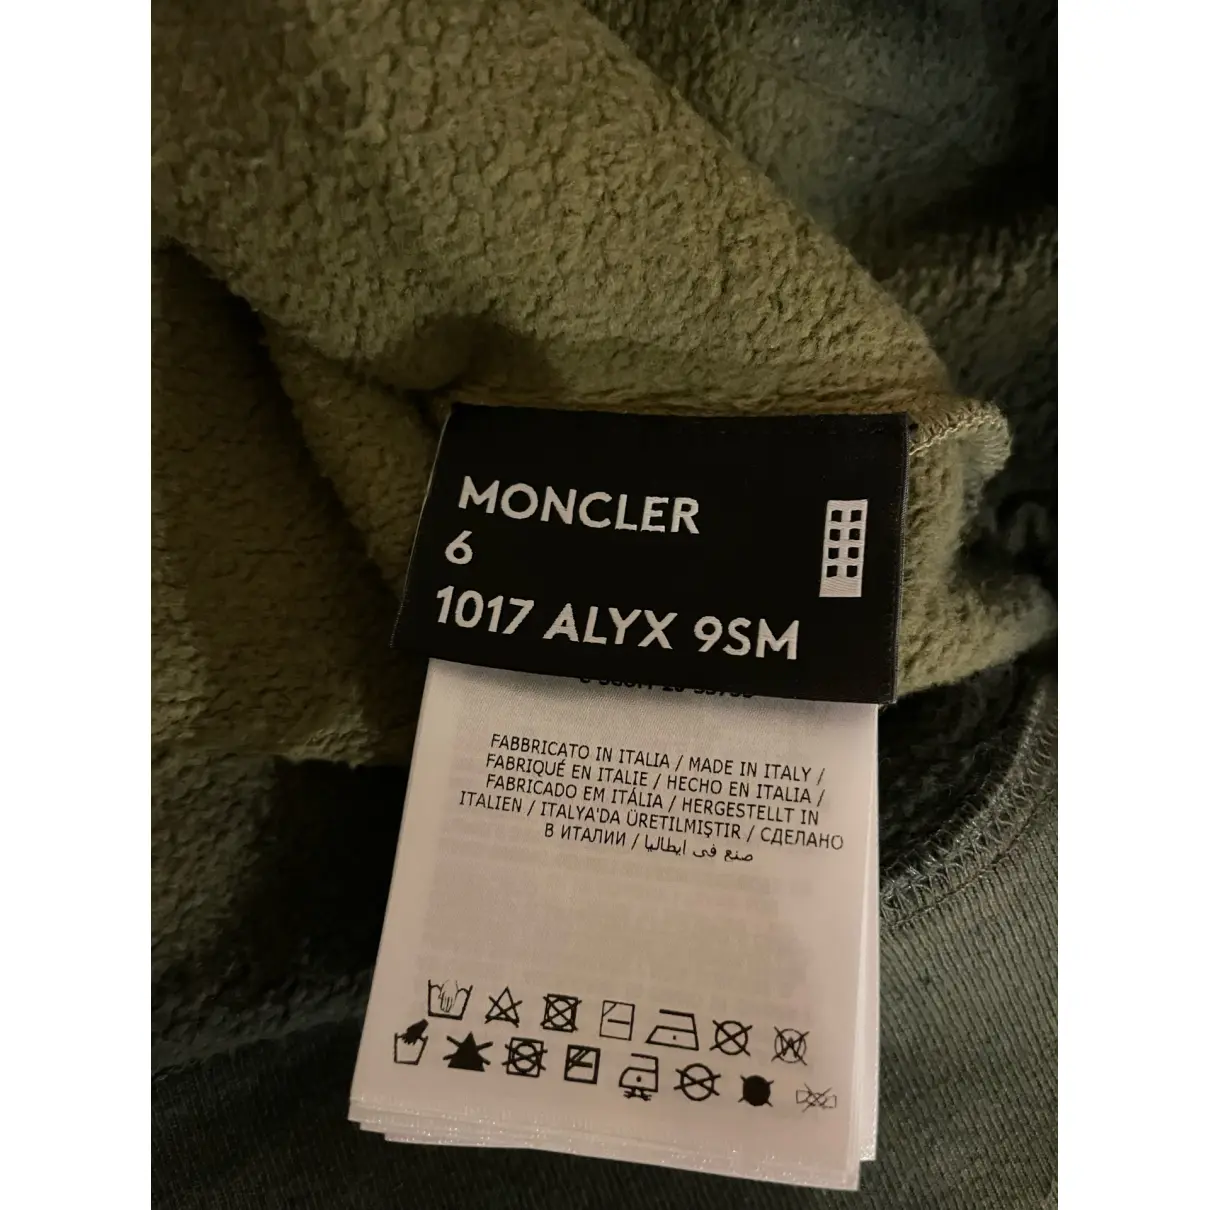 Moncler n°6 1017 Alyx 9SM sweatshirt Moncler Genius